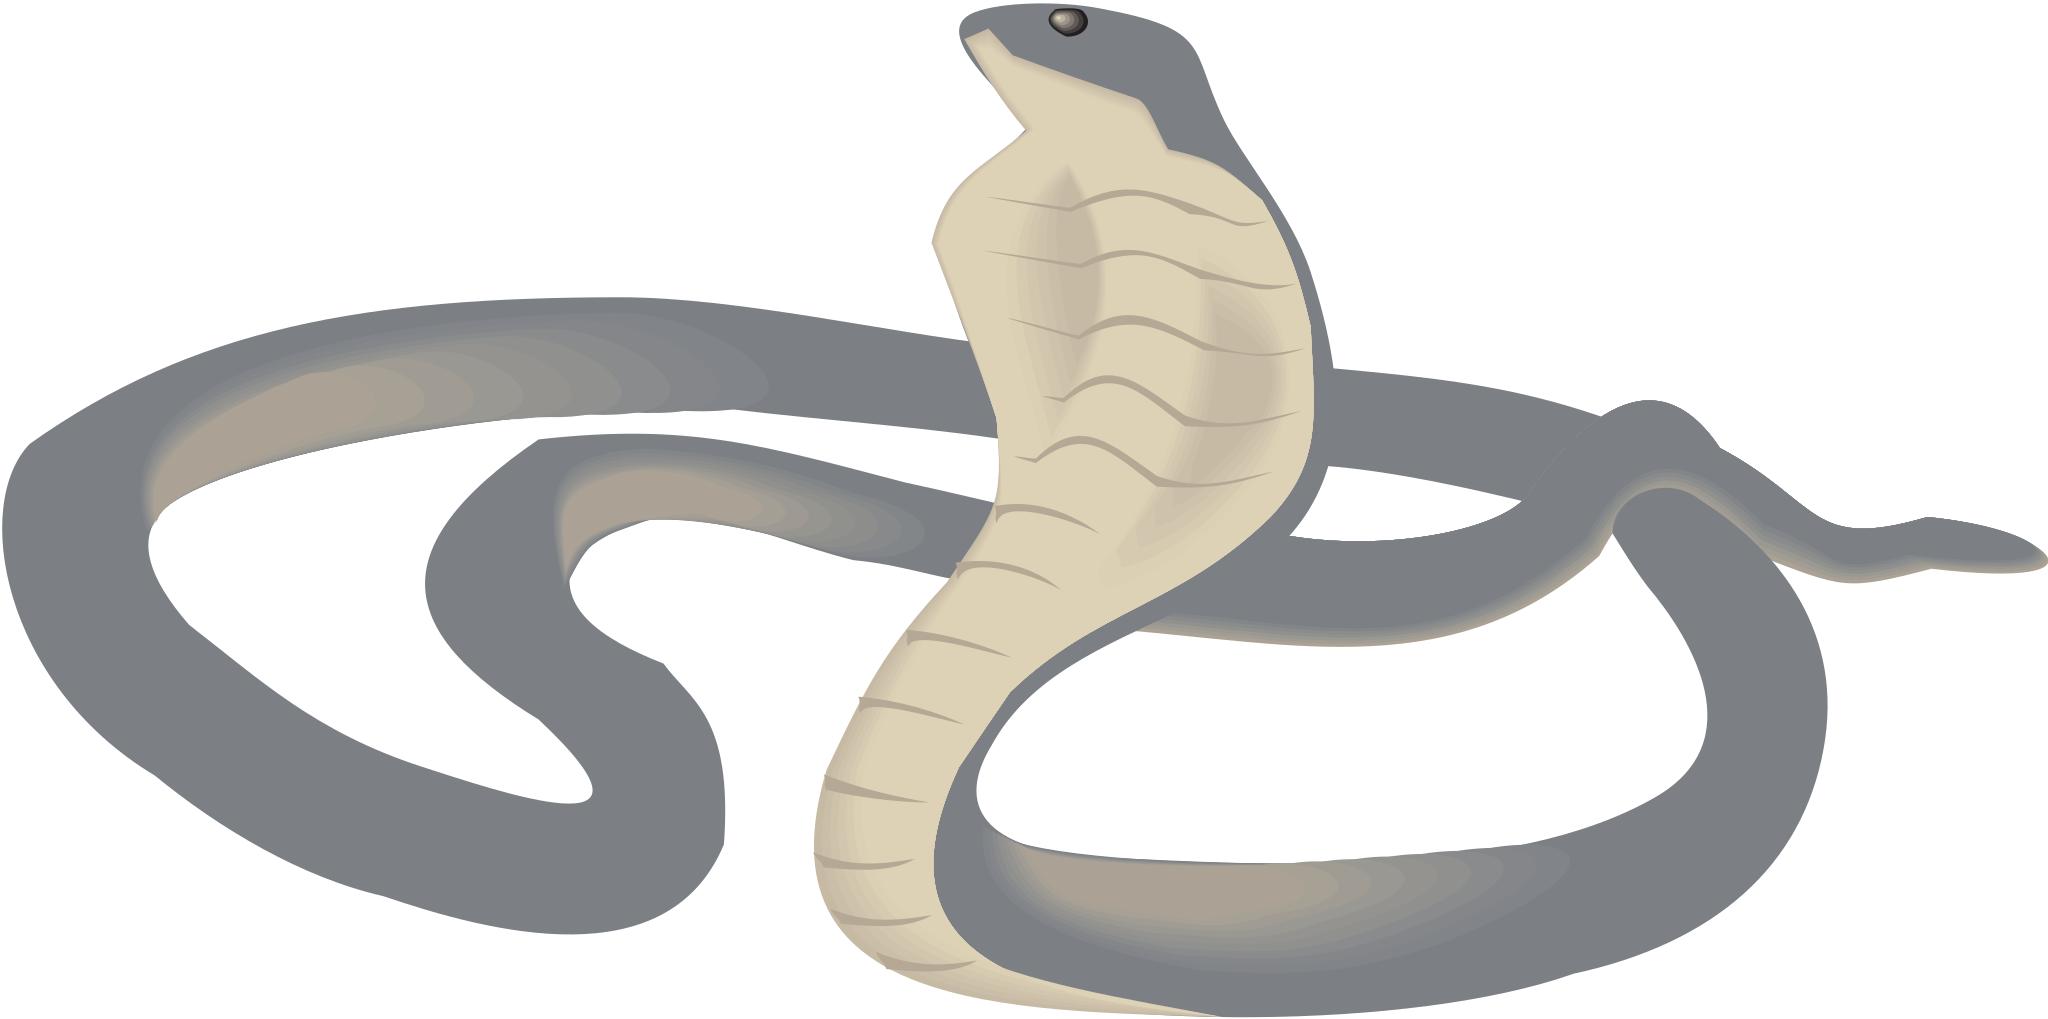 Змея рисунок без фона